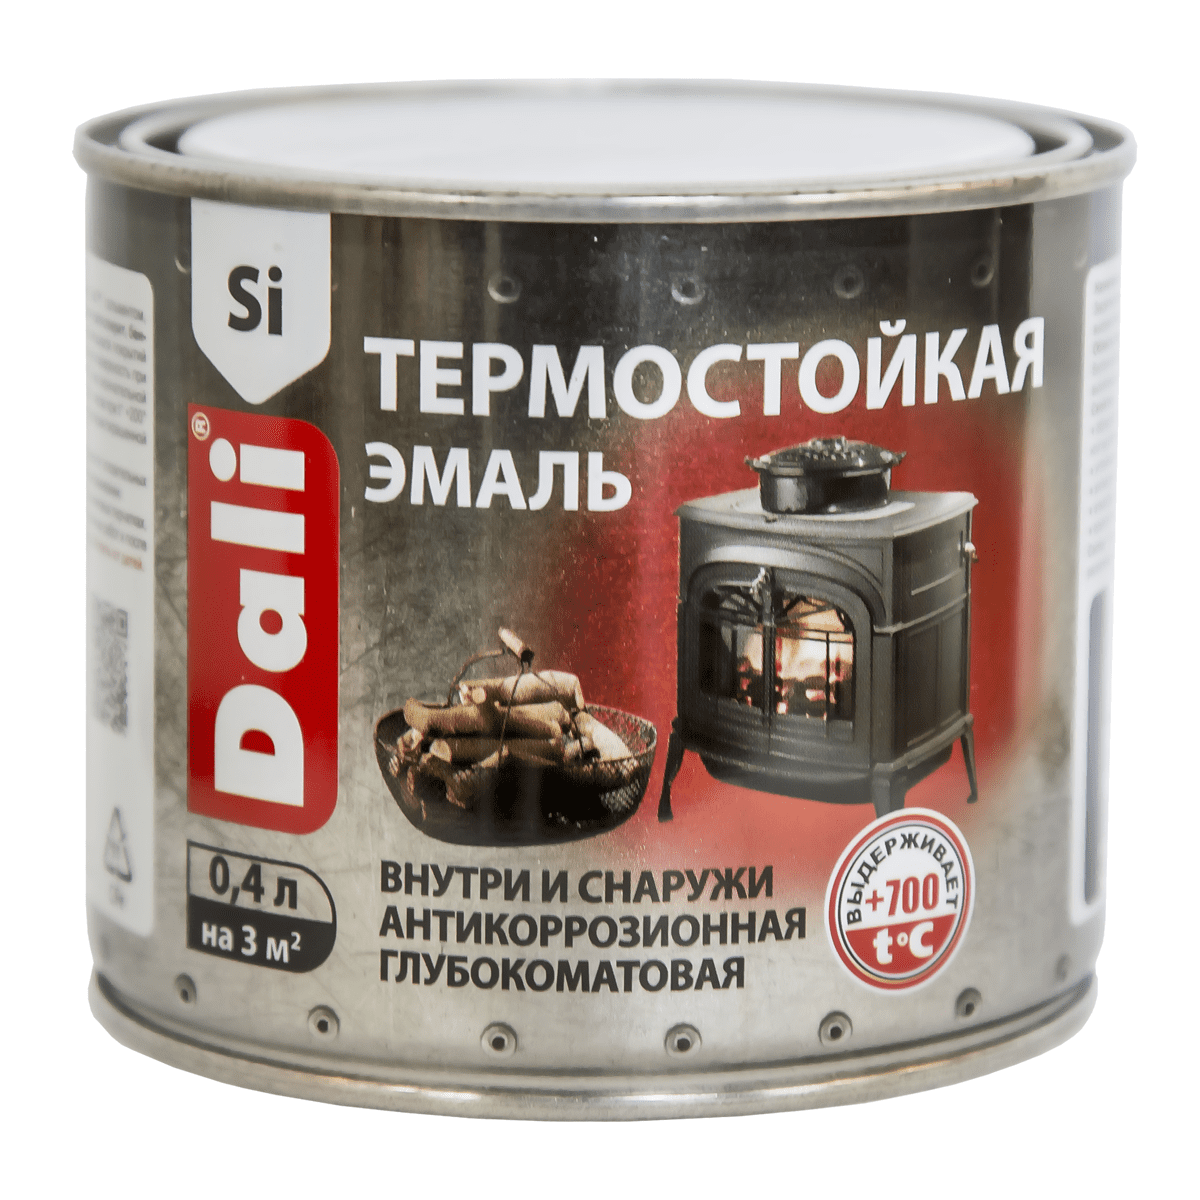  термостойкая серебро 0,4л Дали – Гипермаркет «Мегастрой» Брянск